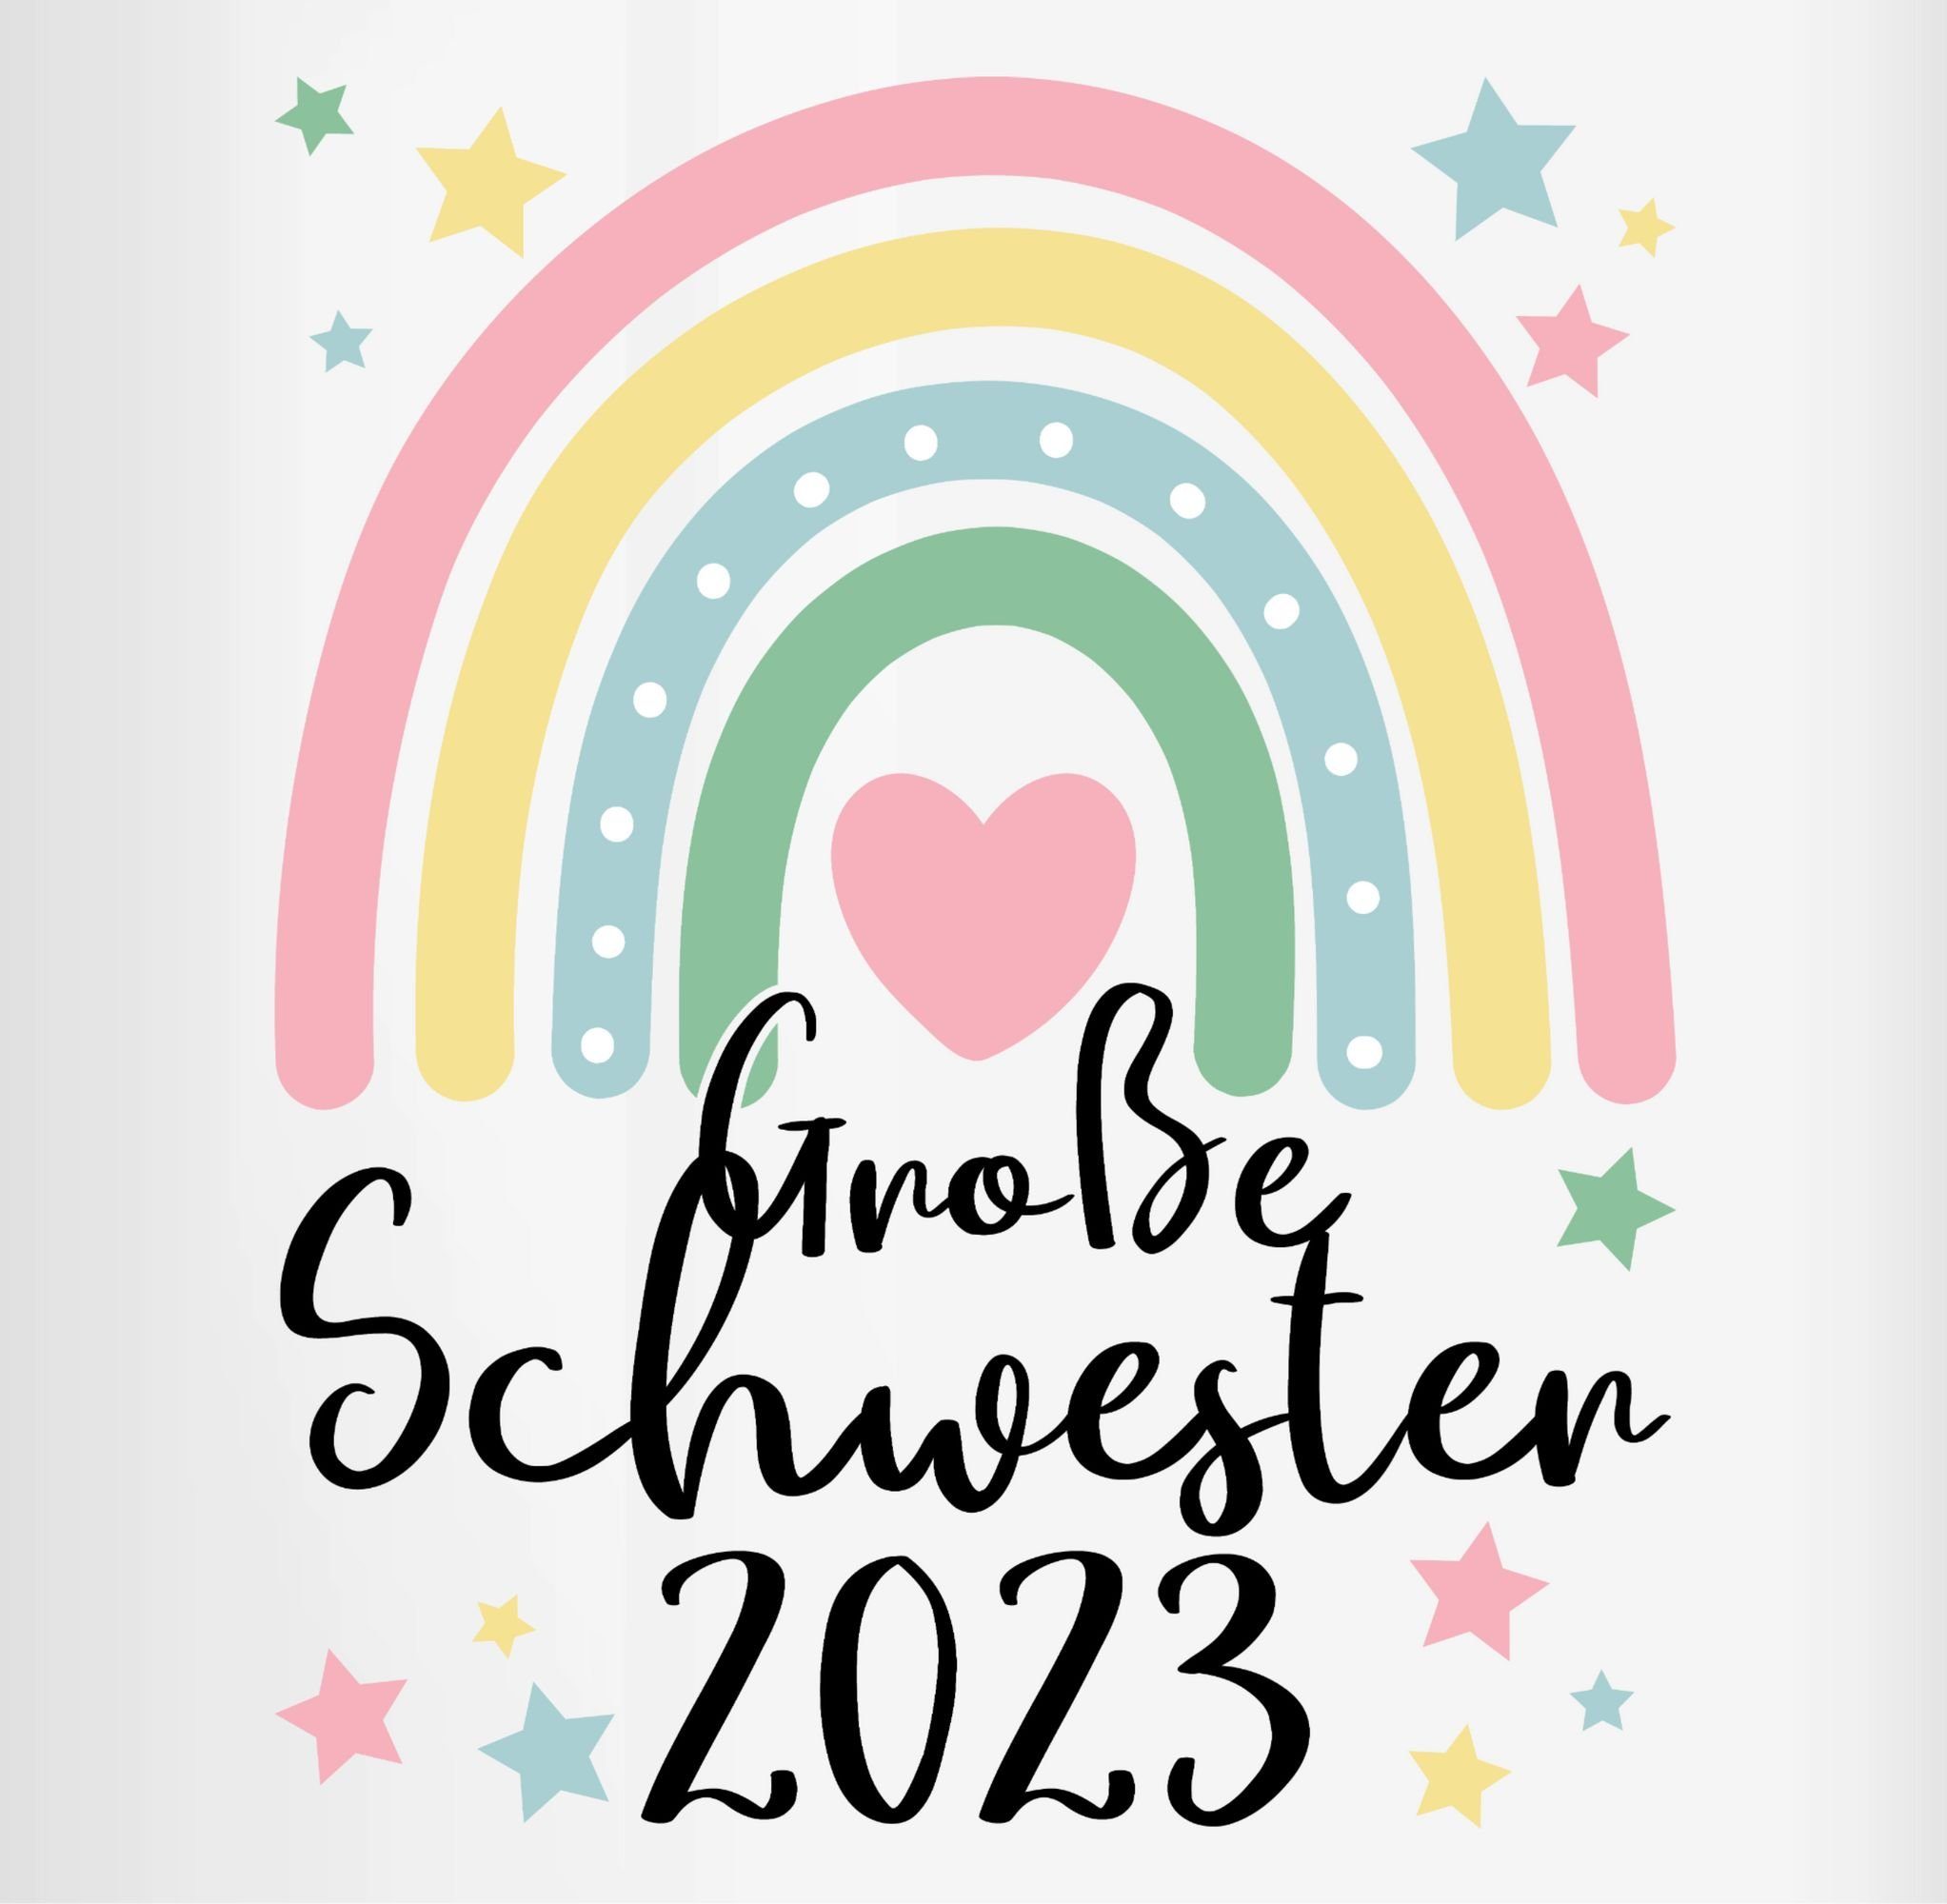 Big Tasse Schwester Sister, Keramik, Schwester Große Geschenk 2023 Bordeauxrot Große Shirtracer Regenbogen 2